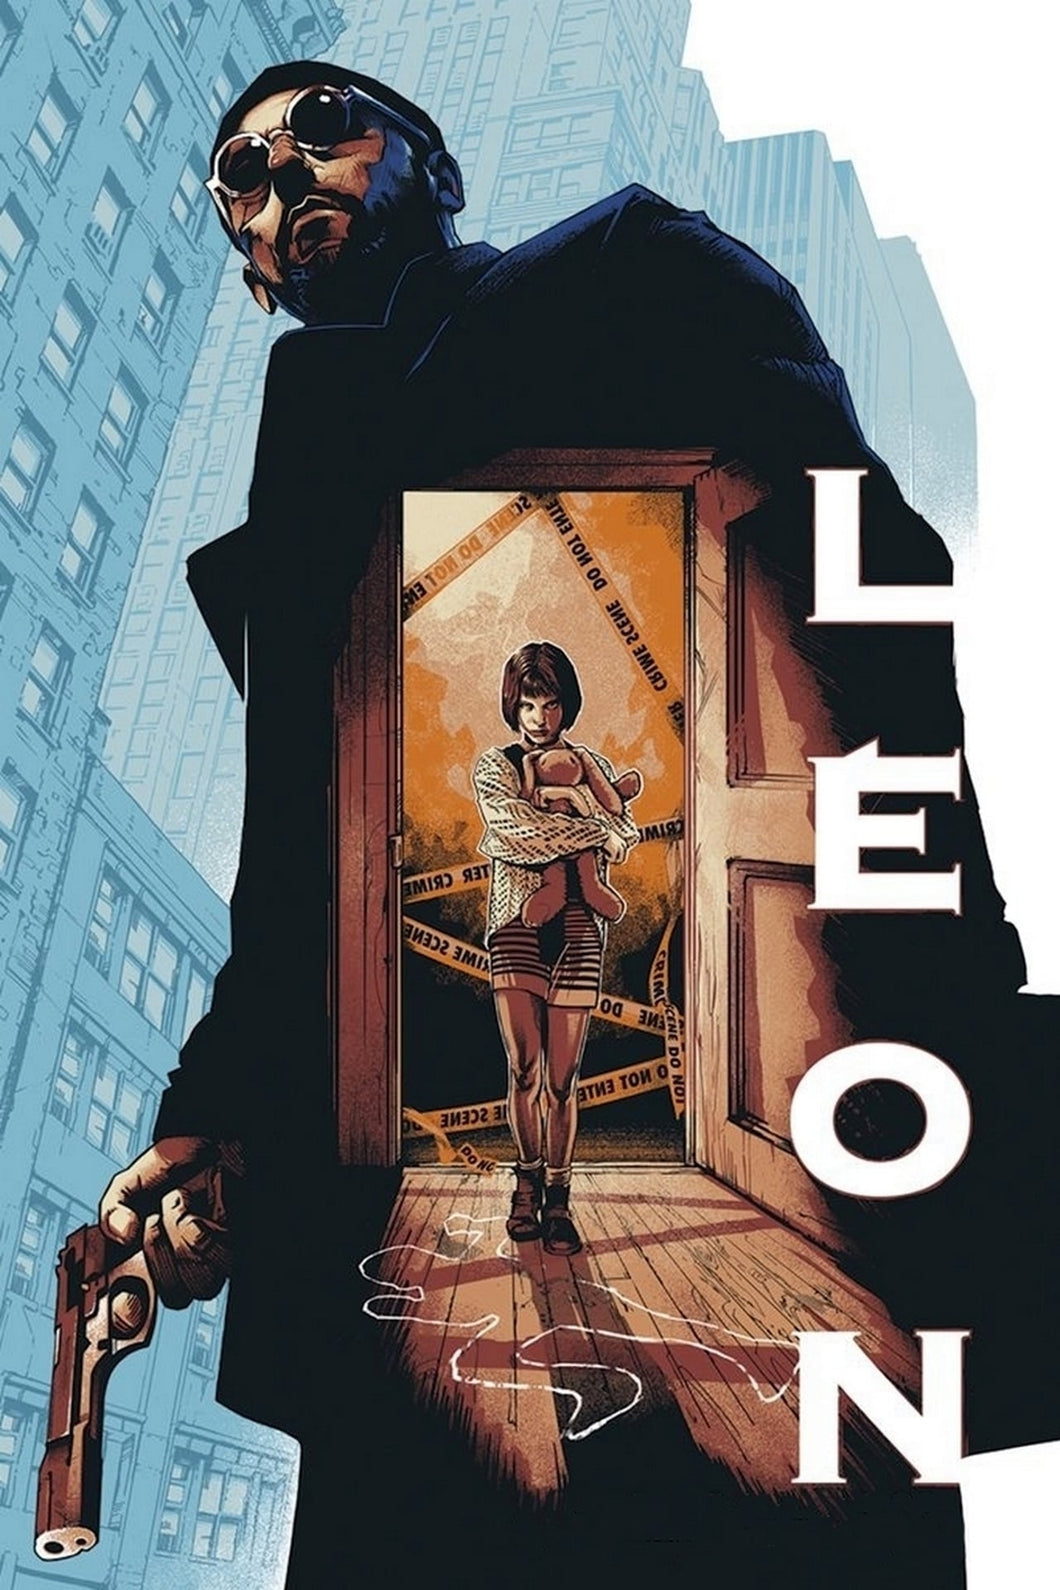 Leon (1996) V3 Movie Poster Framed or Unframed Glossy Poster Free UK Shipping!!!